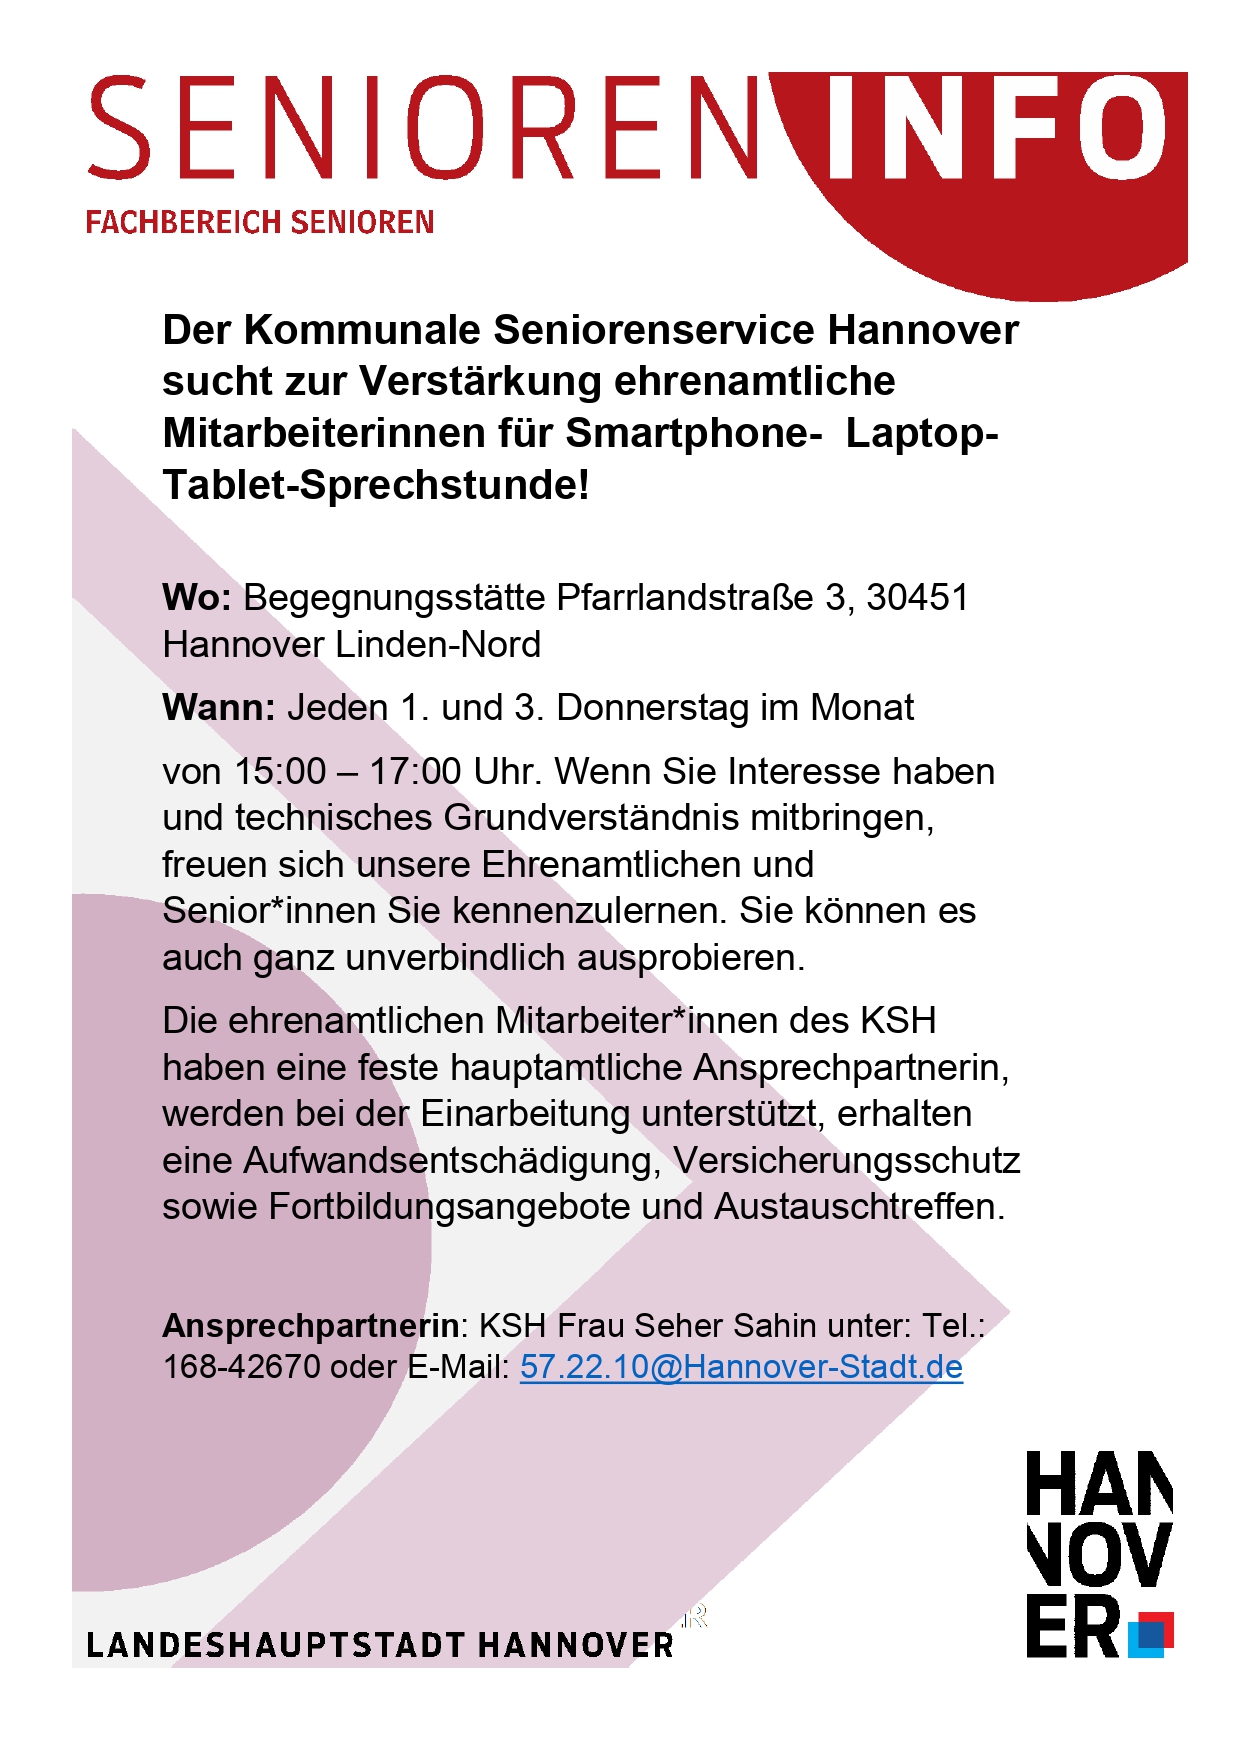 Der Kommunale Seniorenservice Hannover  sucht zur Verstärkung ehrenamtliche Mitarbeiterinnen für Smartphone- Laptop-Tablet-Sprechstunde!